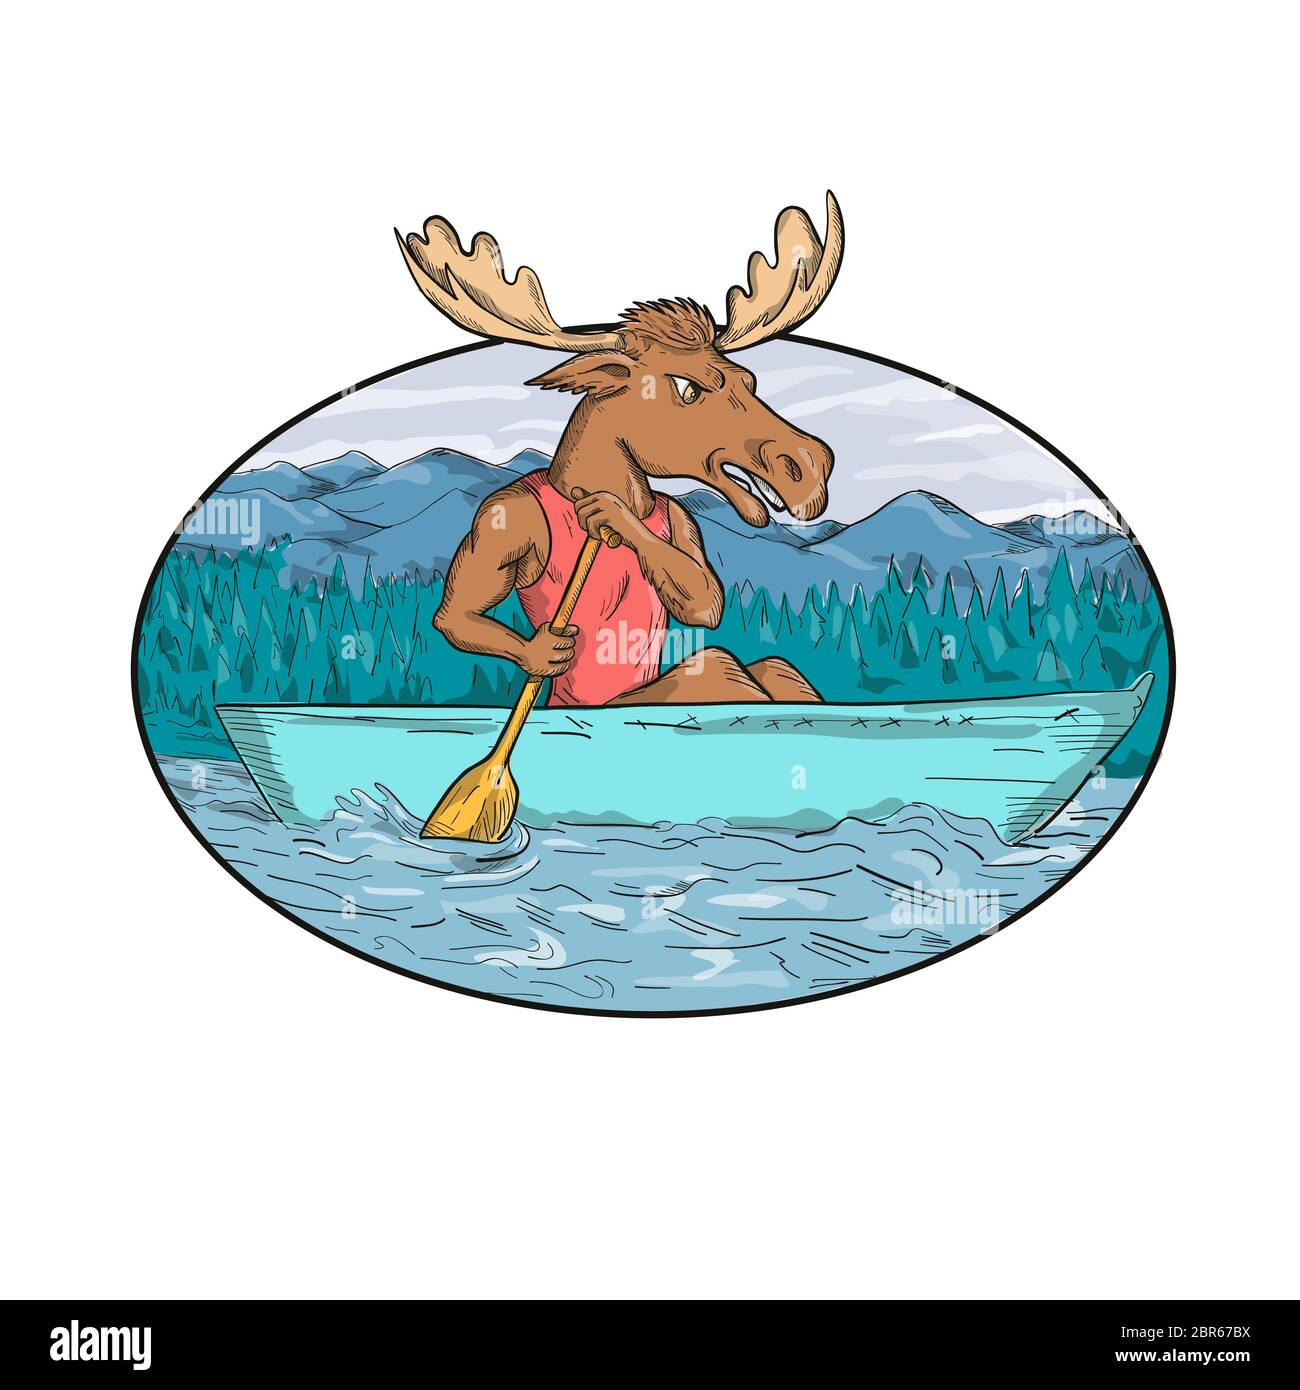 Cartoon Stil handgezeichnete Zeichnung Abbildung: ein Elch mit Paddel Paddeln ein Kanadier Kanu in Fluss oder See mit Berge und Bäume im Hintergrund Stockfoto